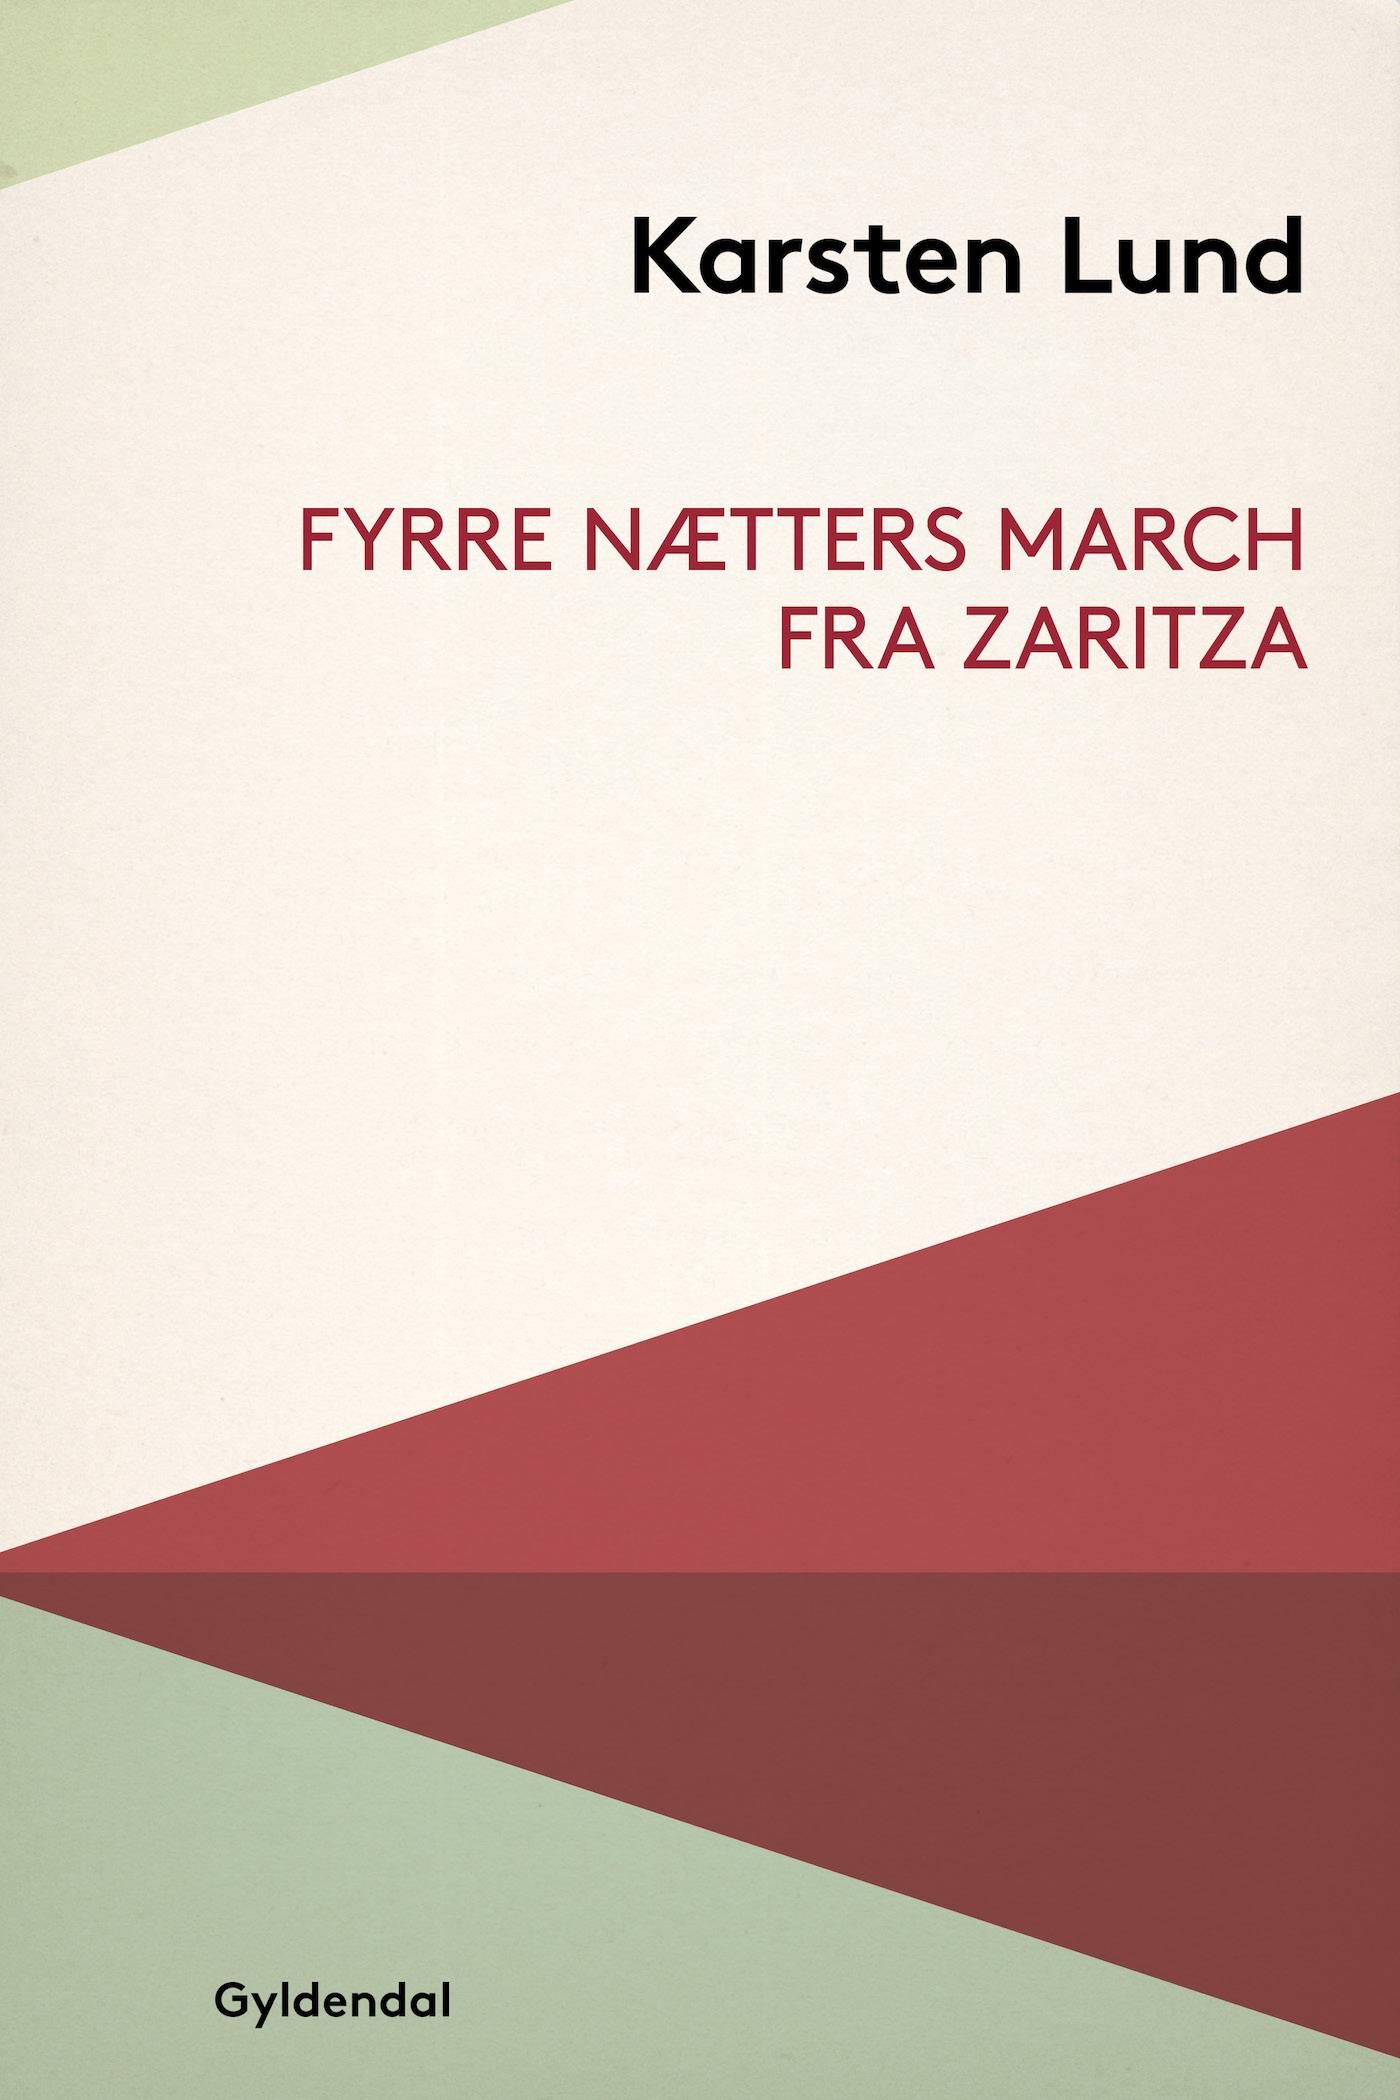 Fyrre nætters march fra Zaritza, e-bog af Karsten Lund